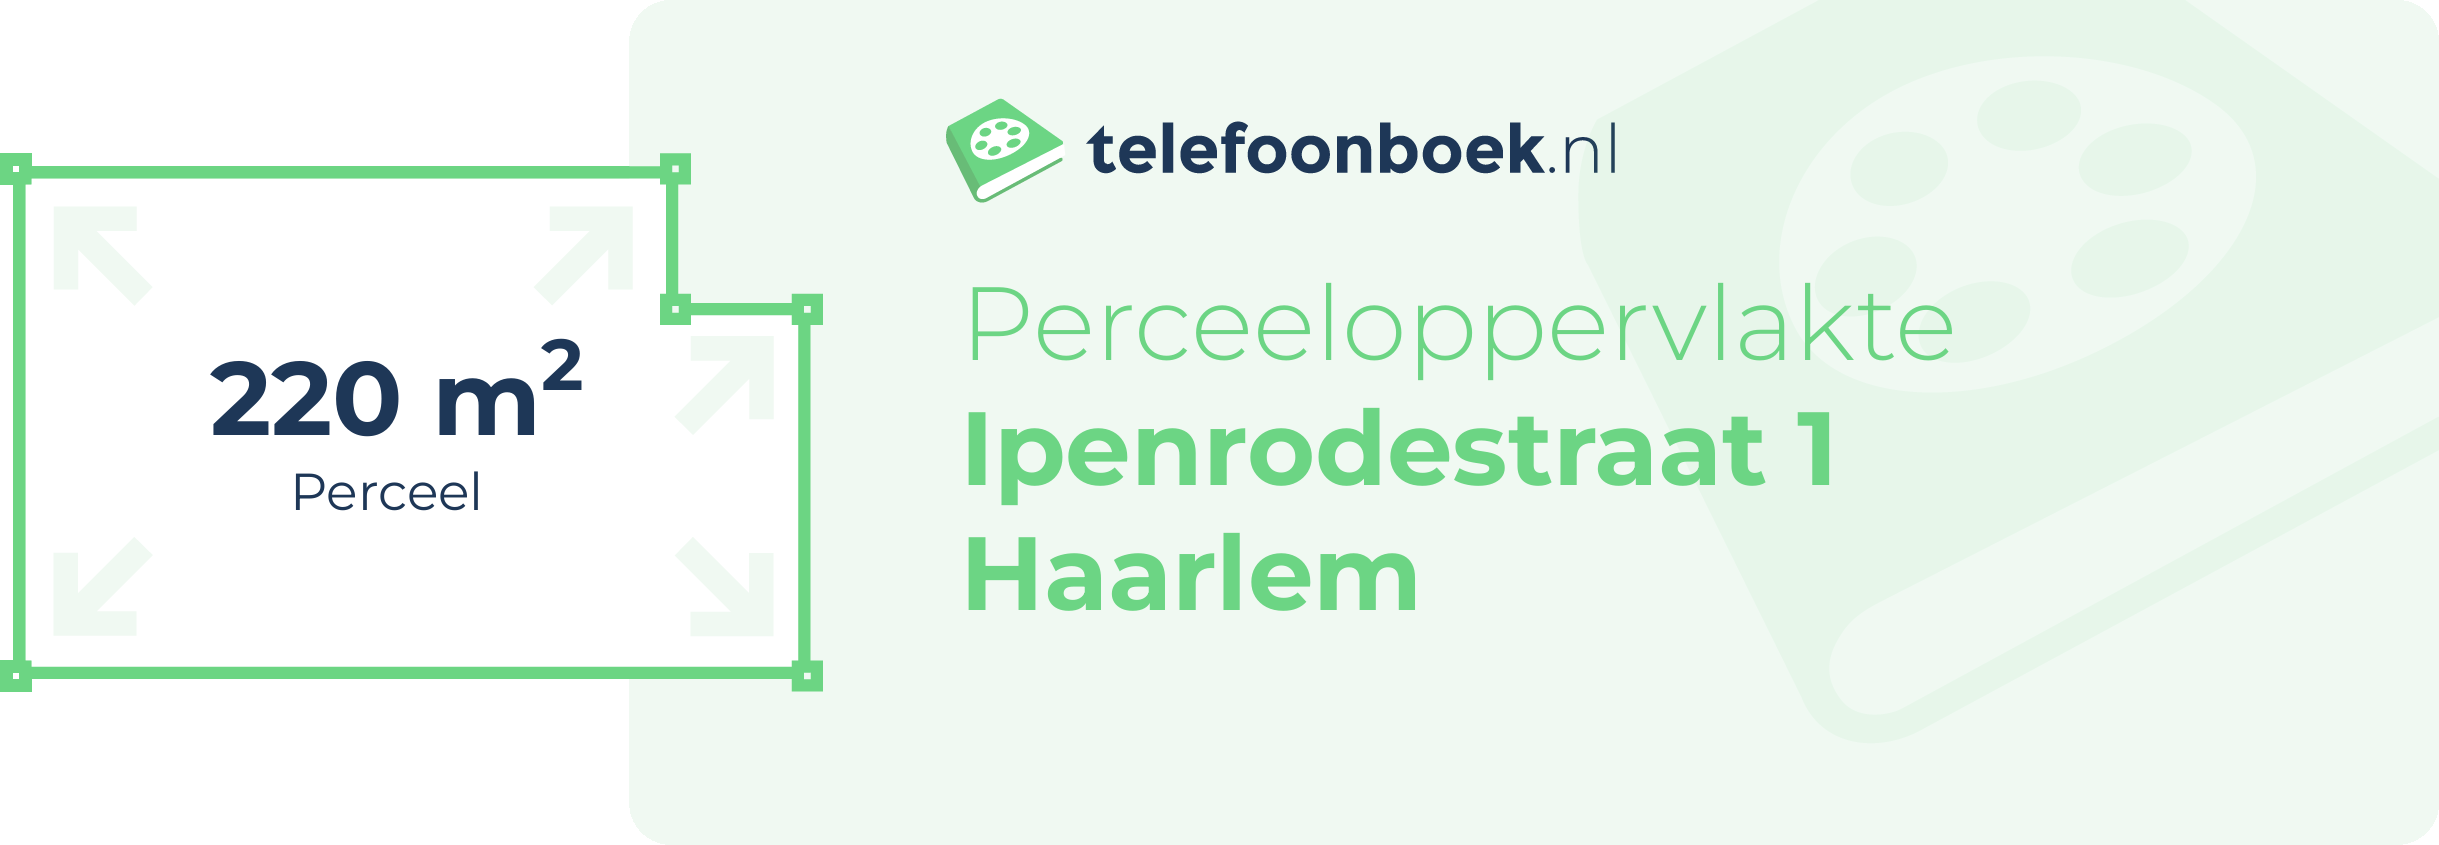 Perceeloppervlakte Ipenrodestraat 1 Haarlem